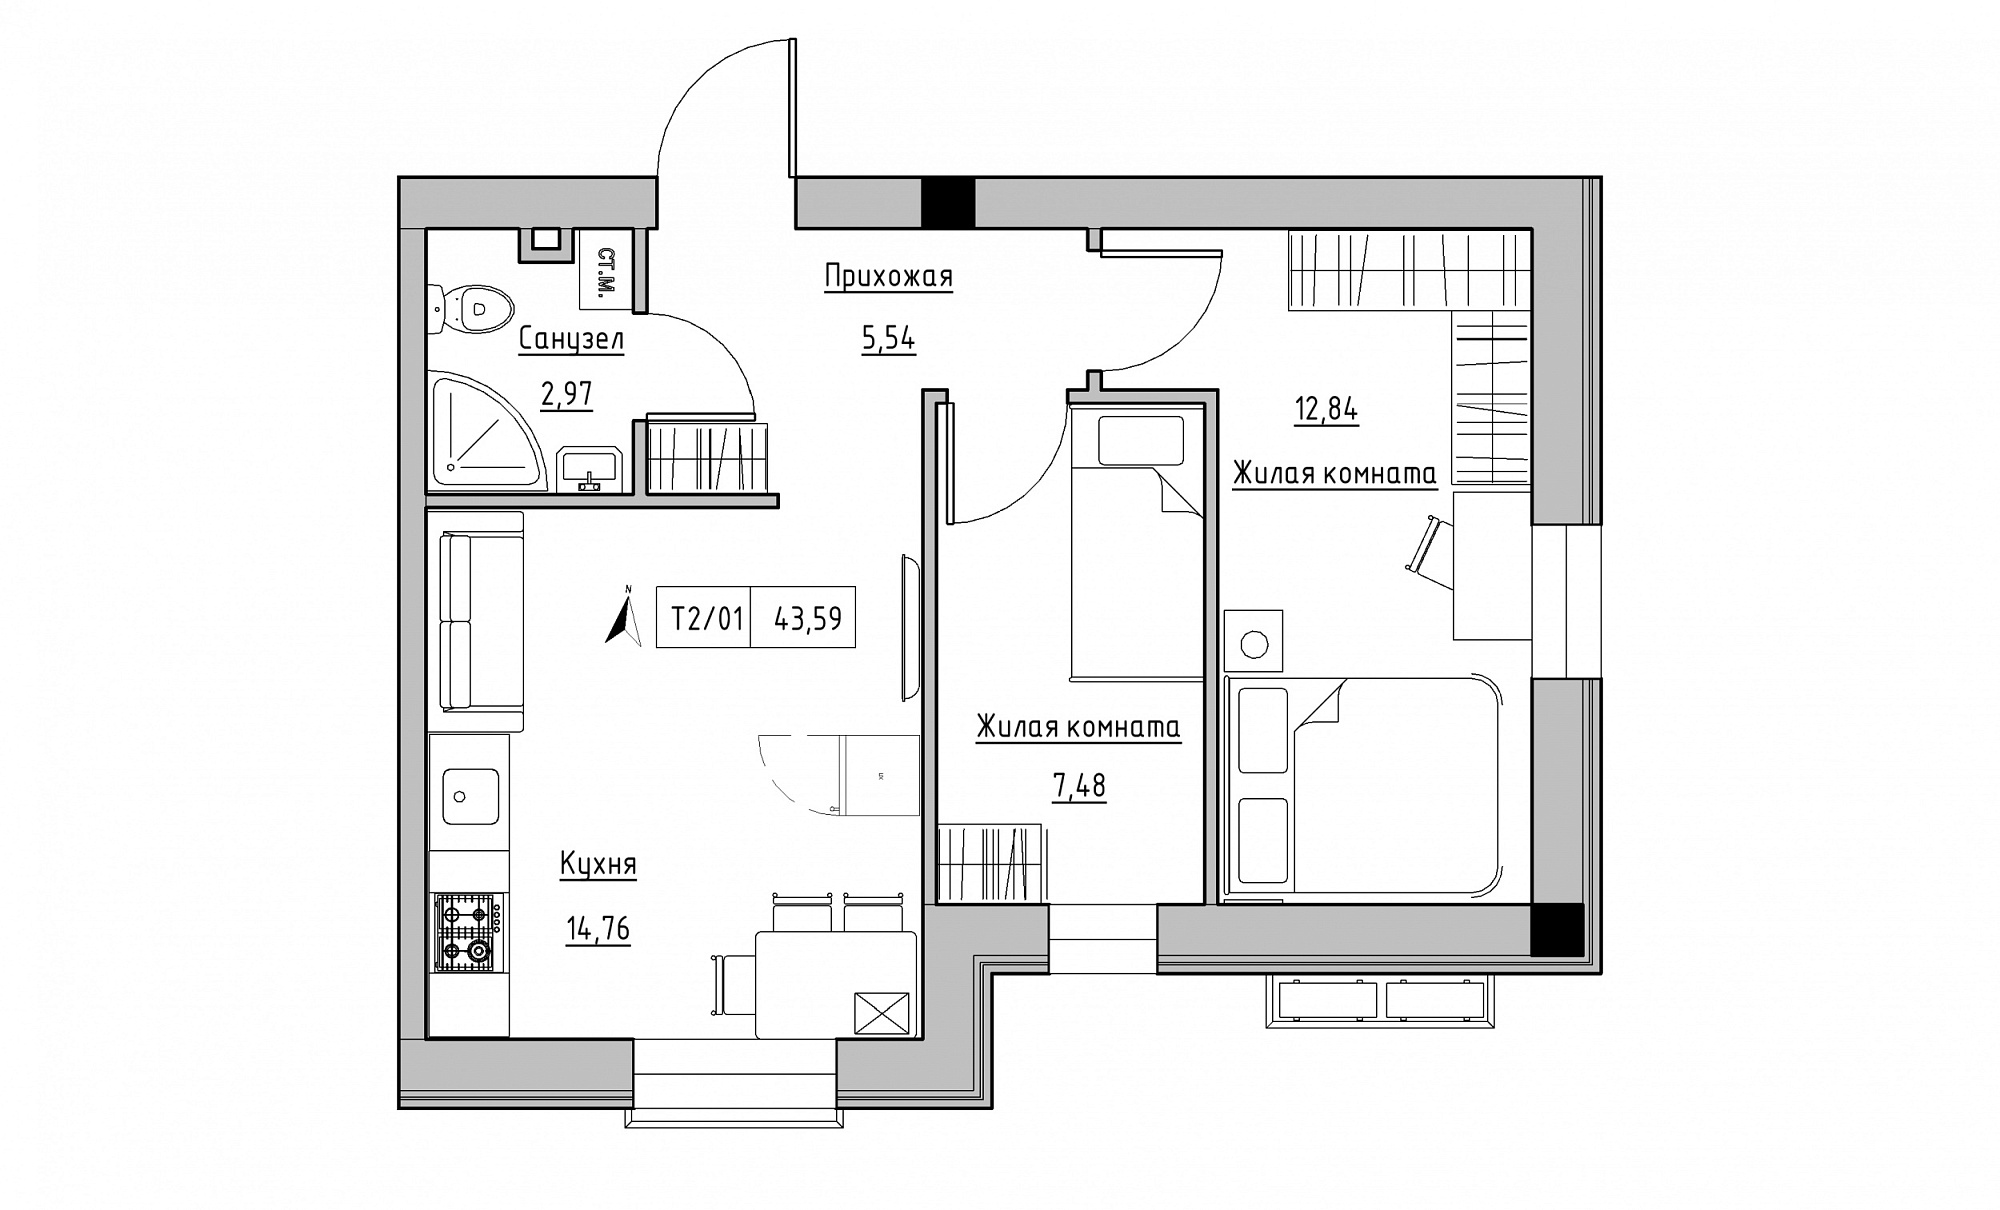 Планування 2-к квартира площею 43.59м2, KS-015-01/0008.